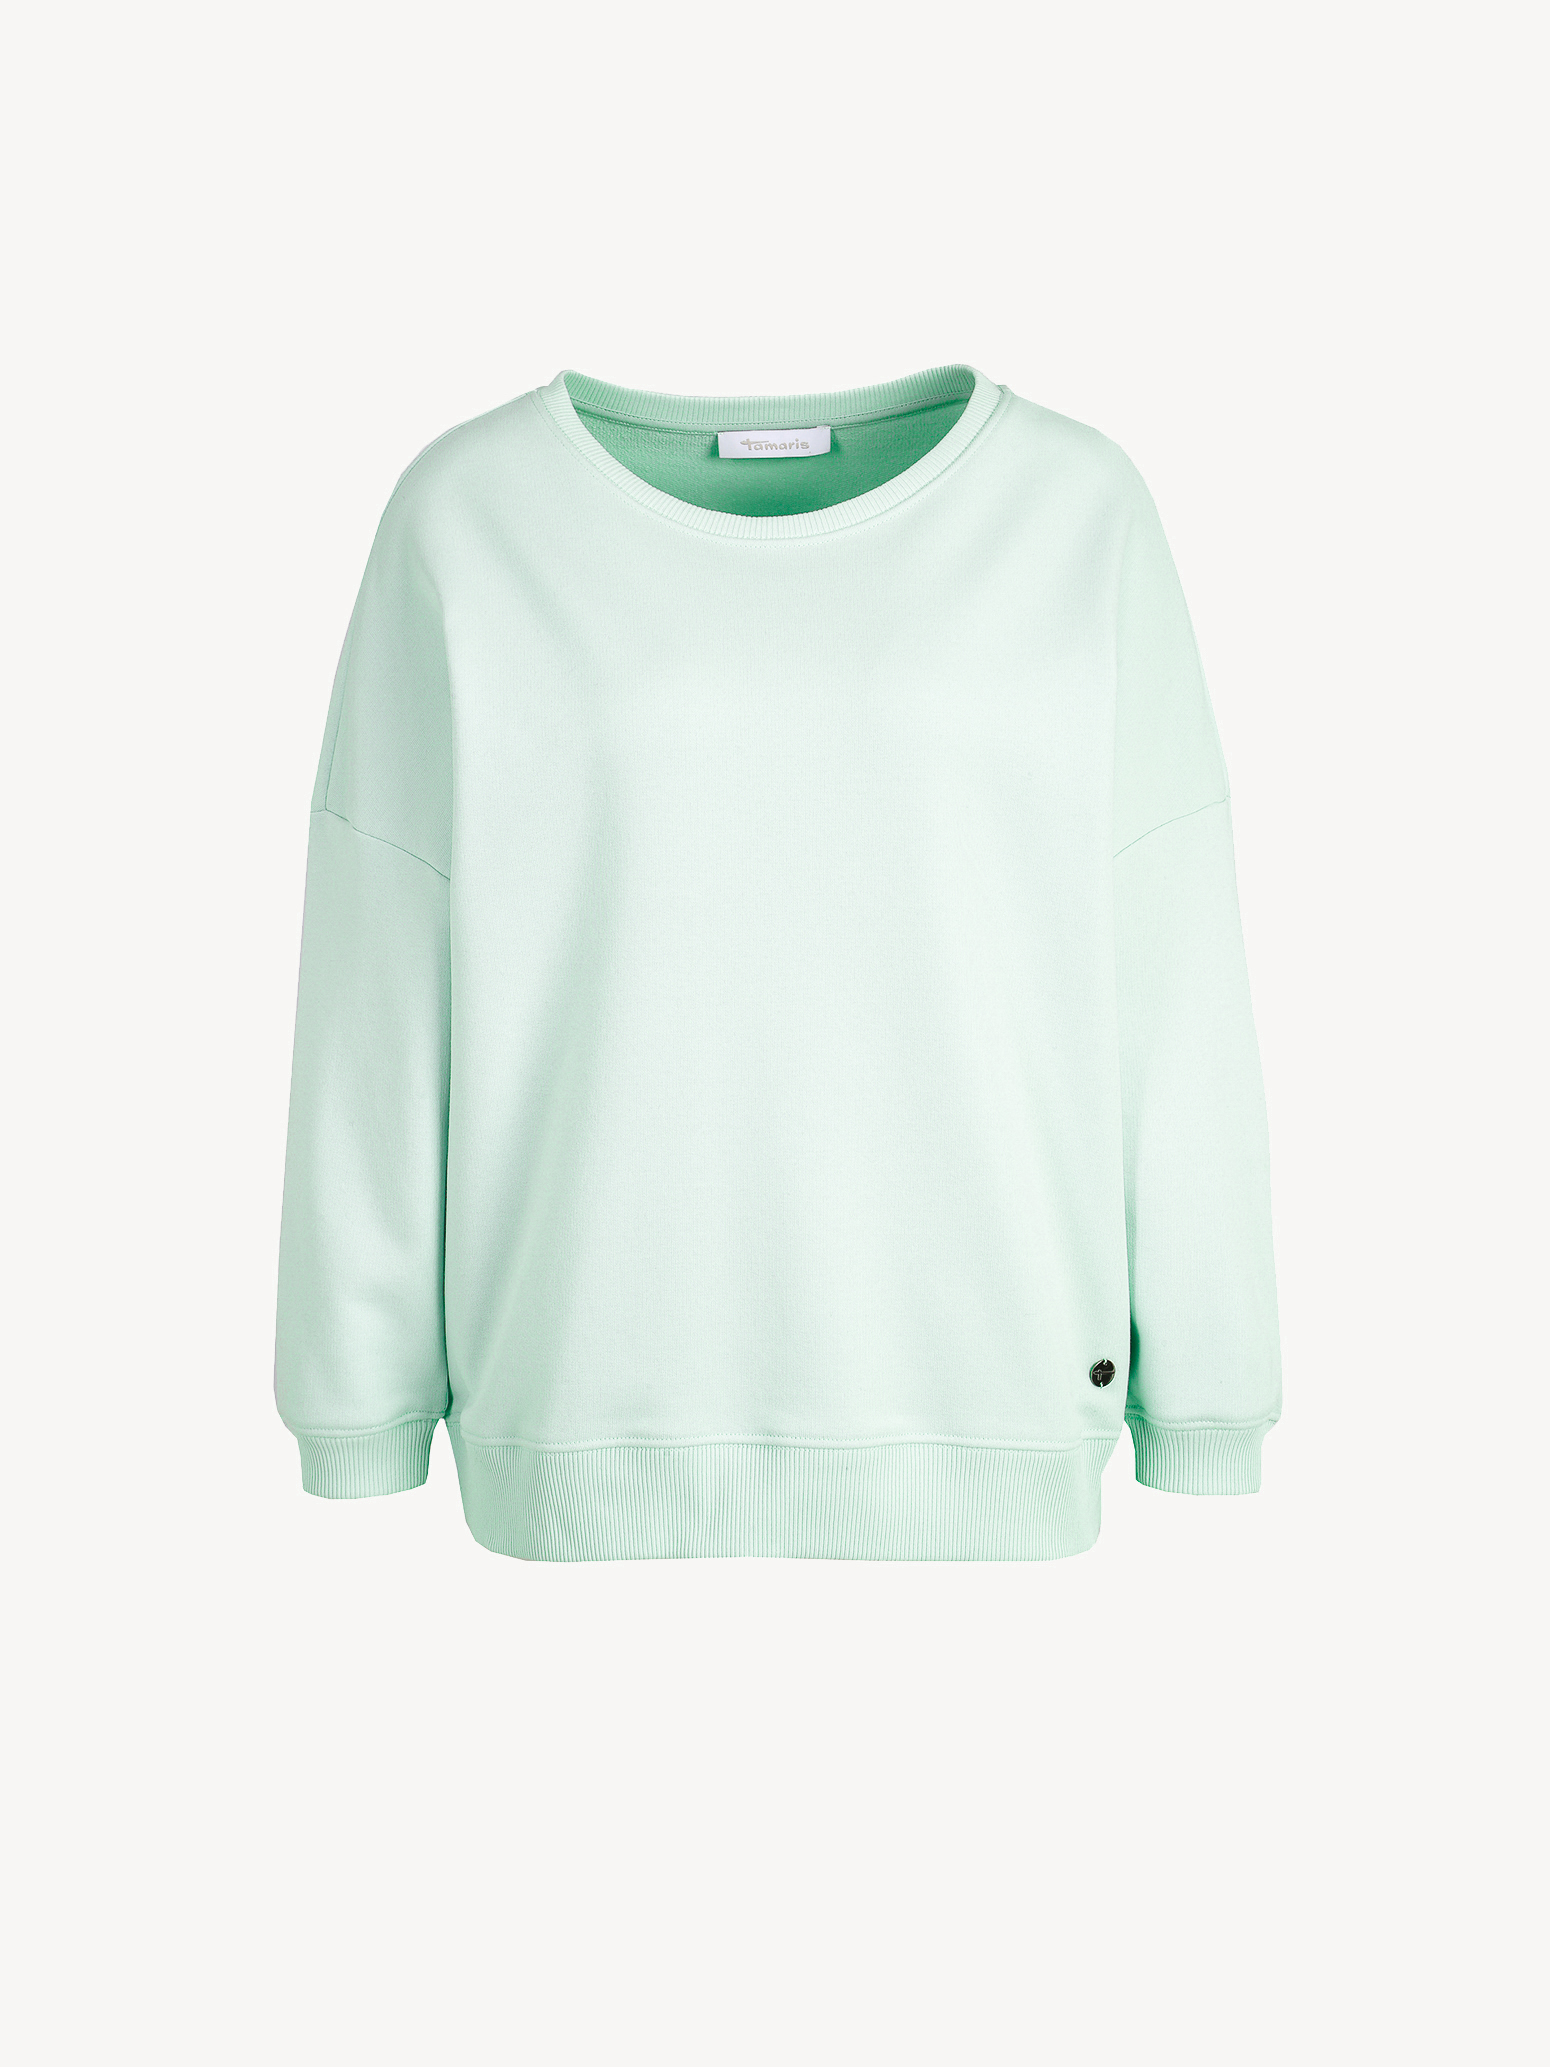 Sweatshirt - grün